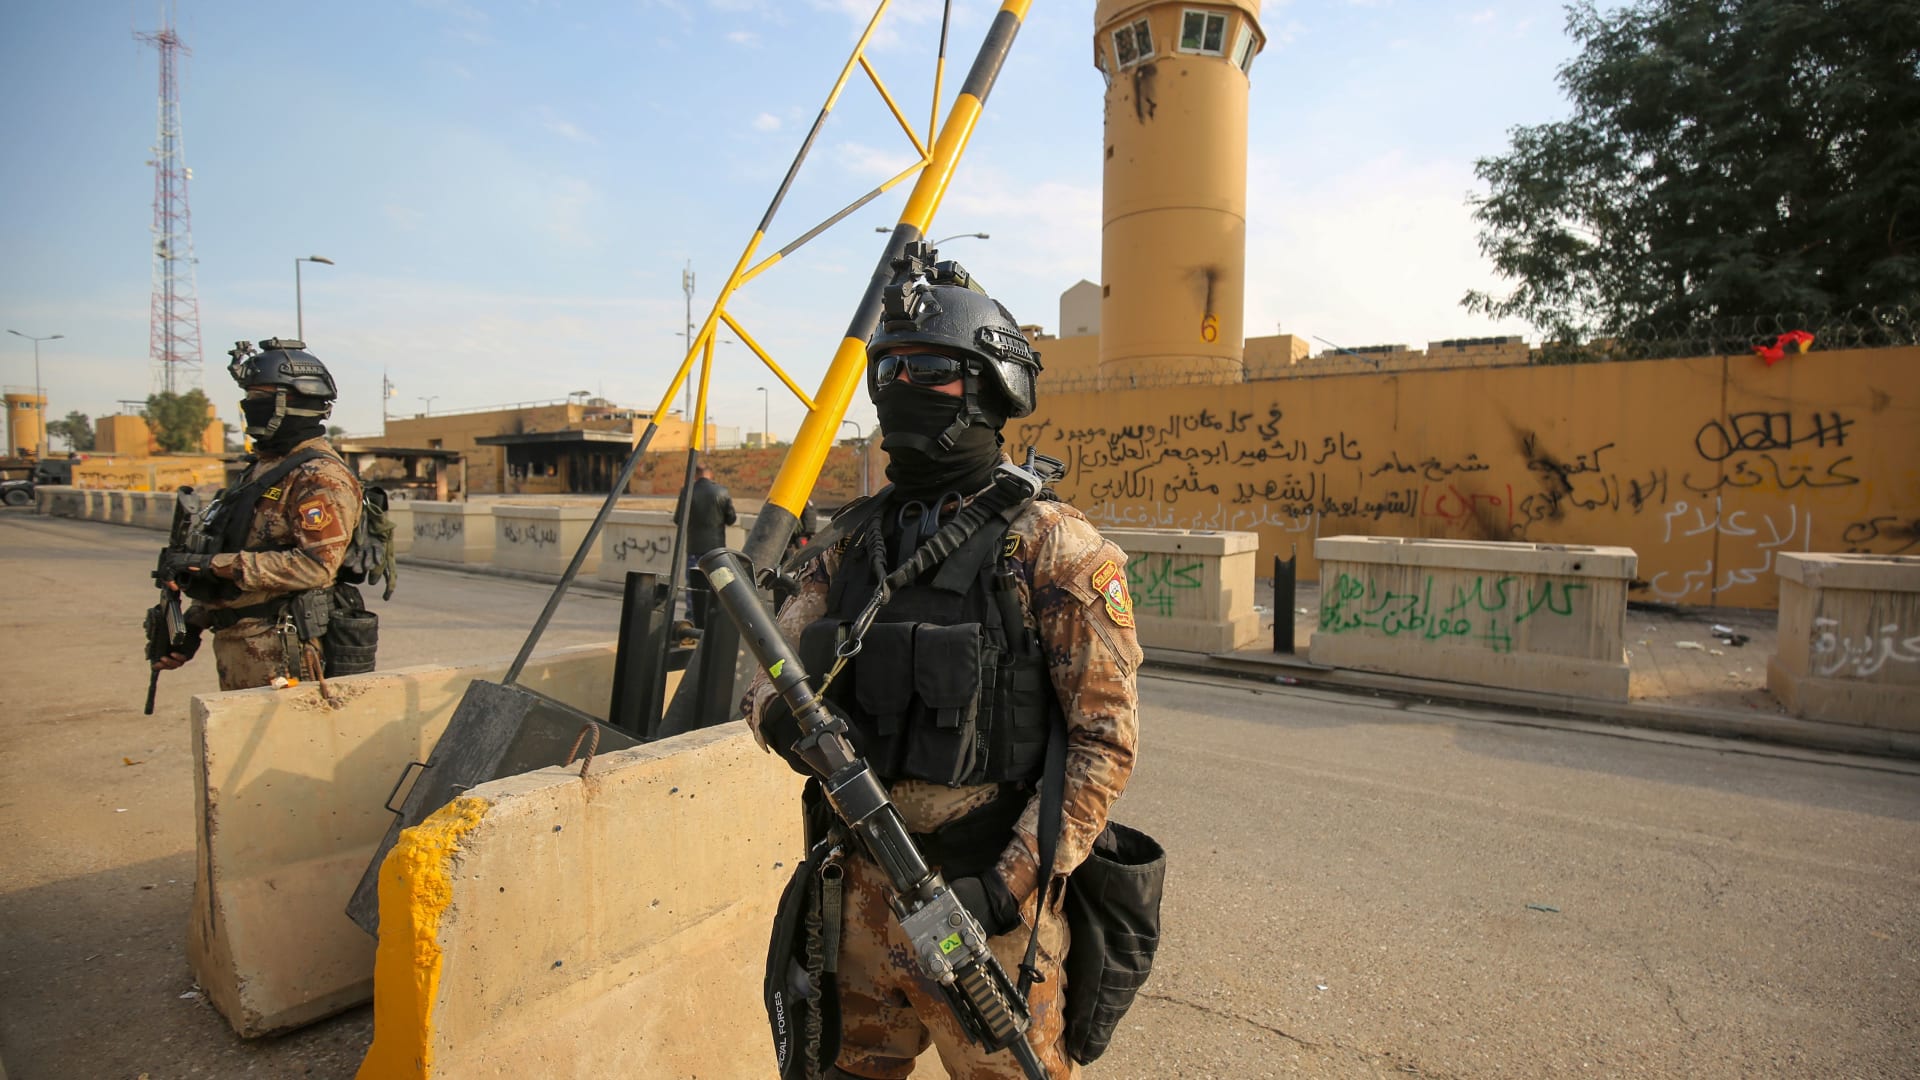 السلطات العراقية تفتح "المنطقة الخضراء" جزئيا للعامة